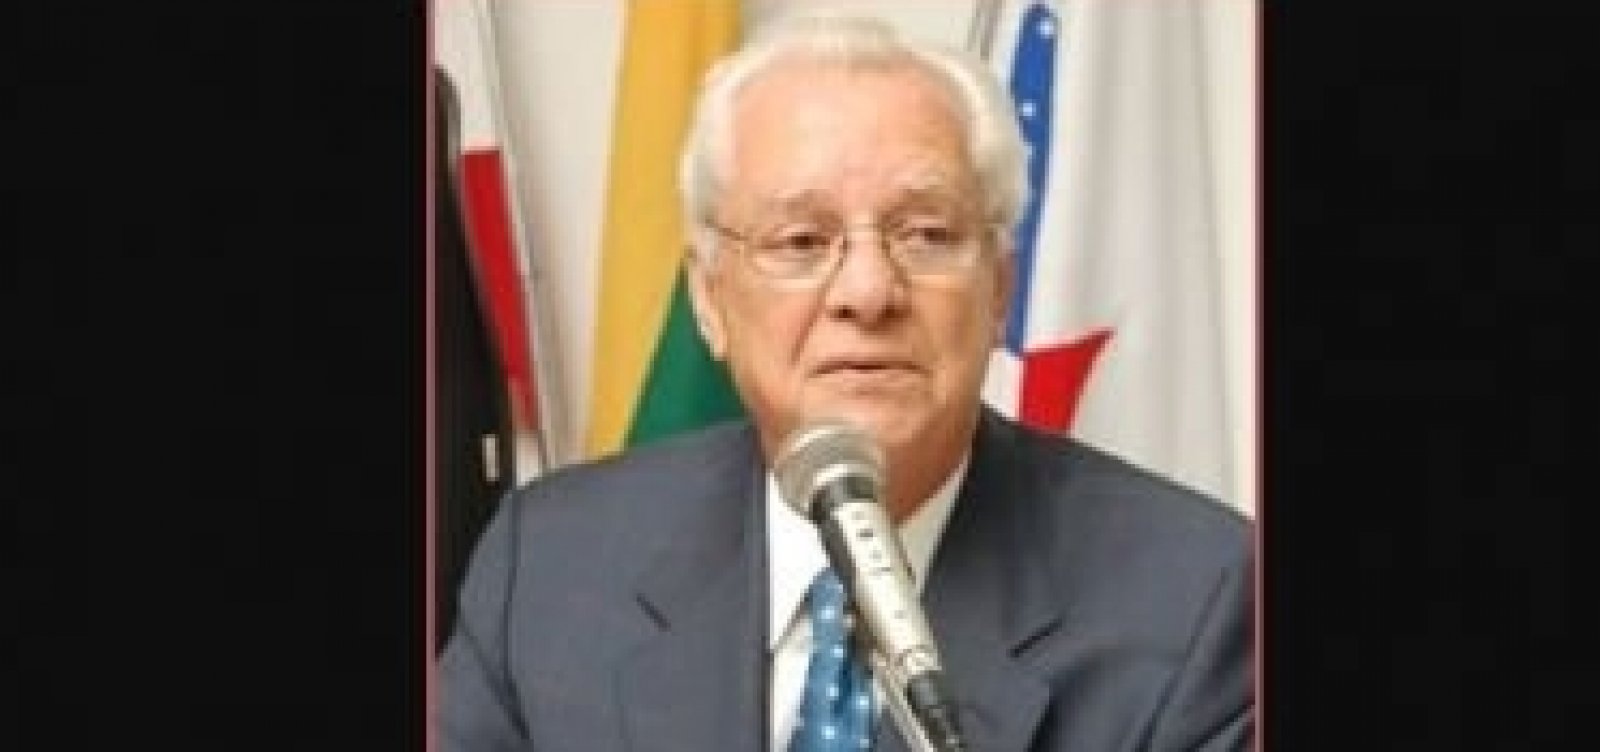 Morre o advogado Edson O’Dwyer, um dos fundadores da Academia de Letras Jurídicas da Bahia